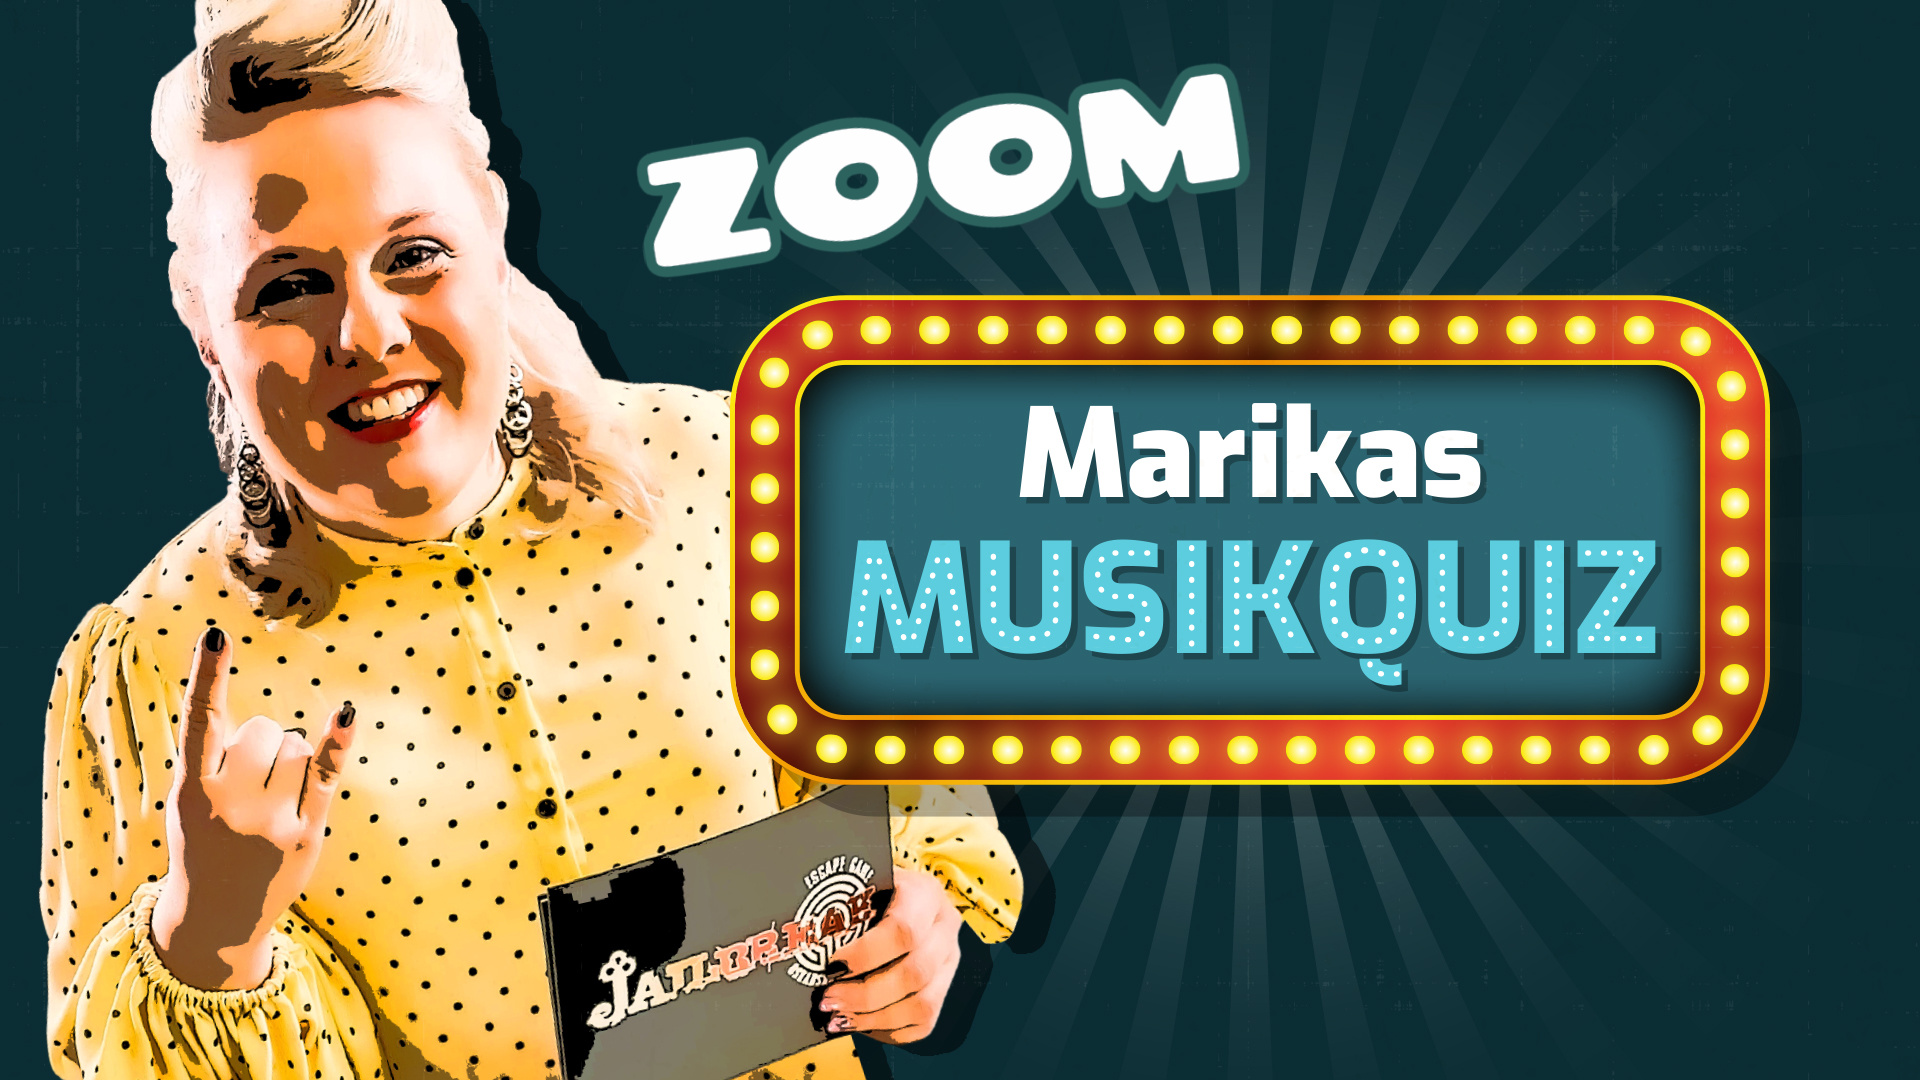 Marias Musikquiz - Live på Zoom